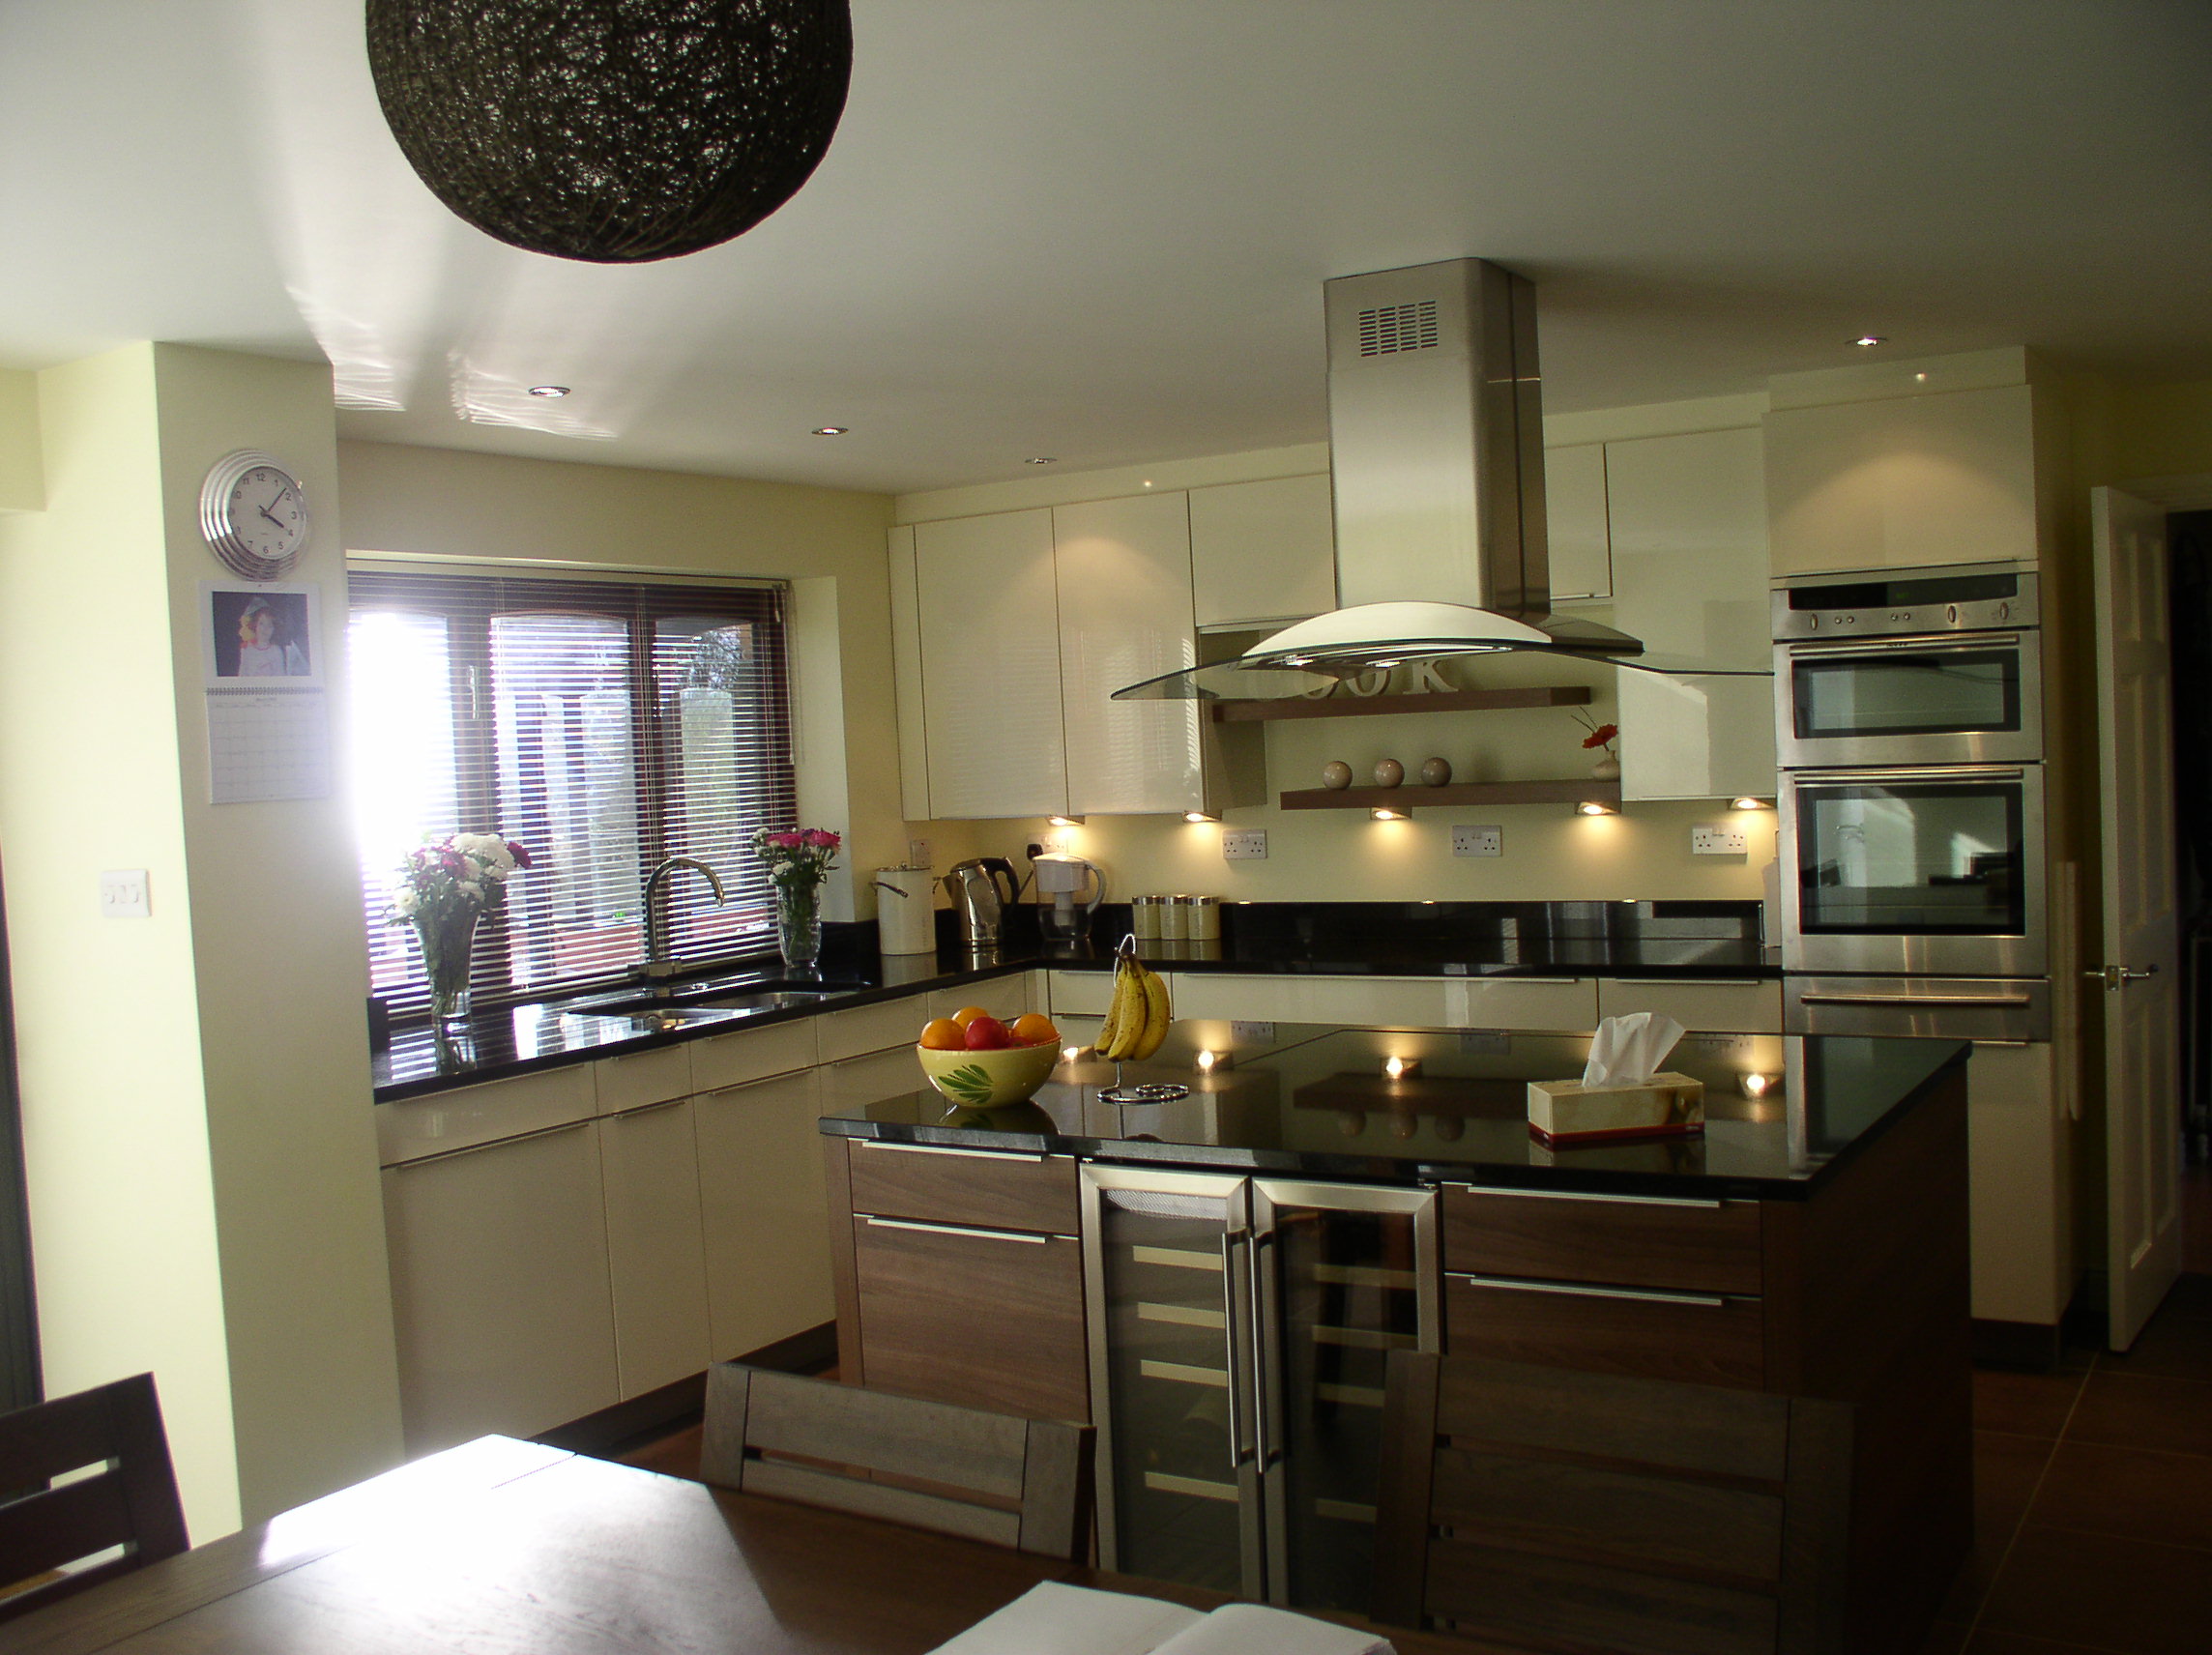 Kitchen Studio Ltd. Kitchen Design in Watford.